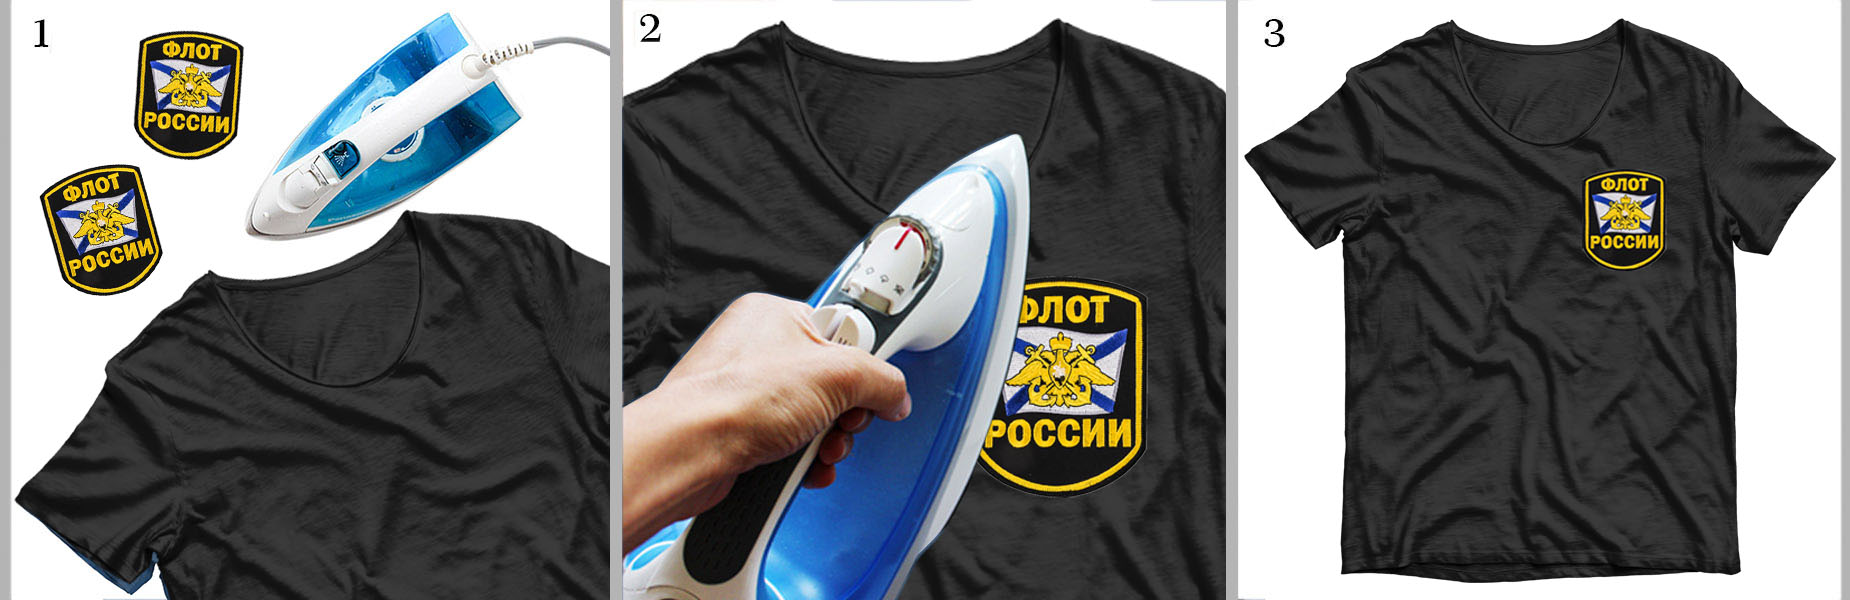 Шеврон моряка "Флот России" от Военпро на футболках